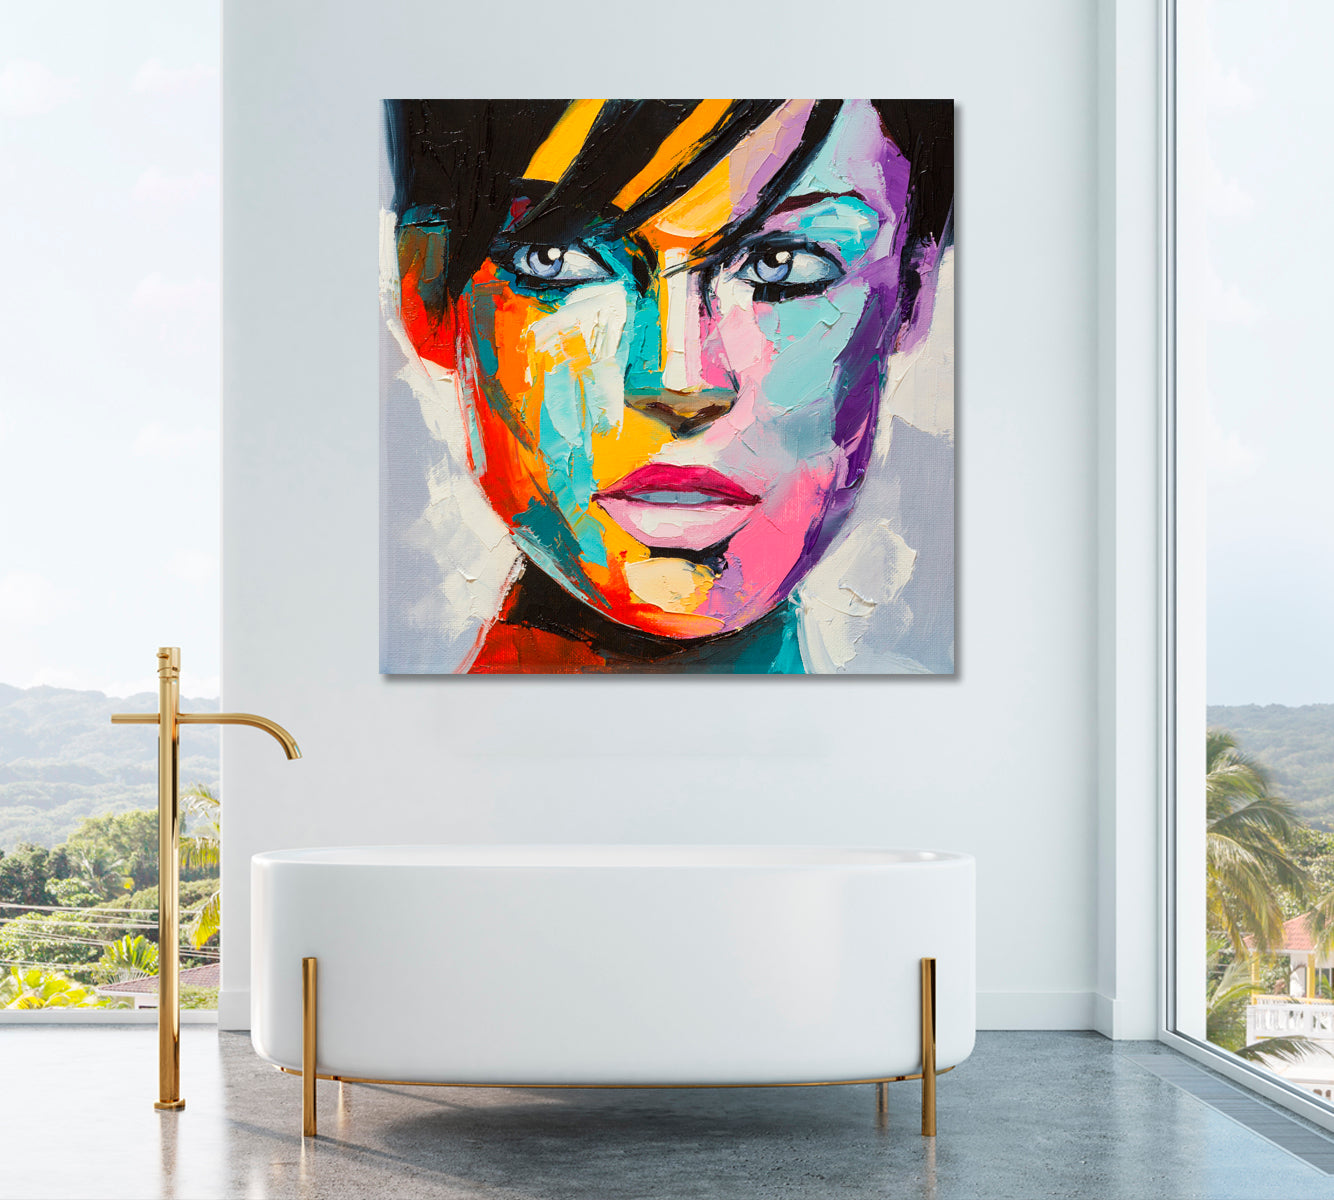 Colorful Woman Portrait Canvas Print ArtLexy   